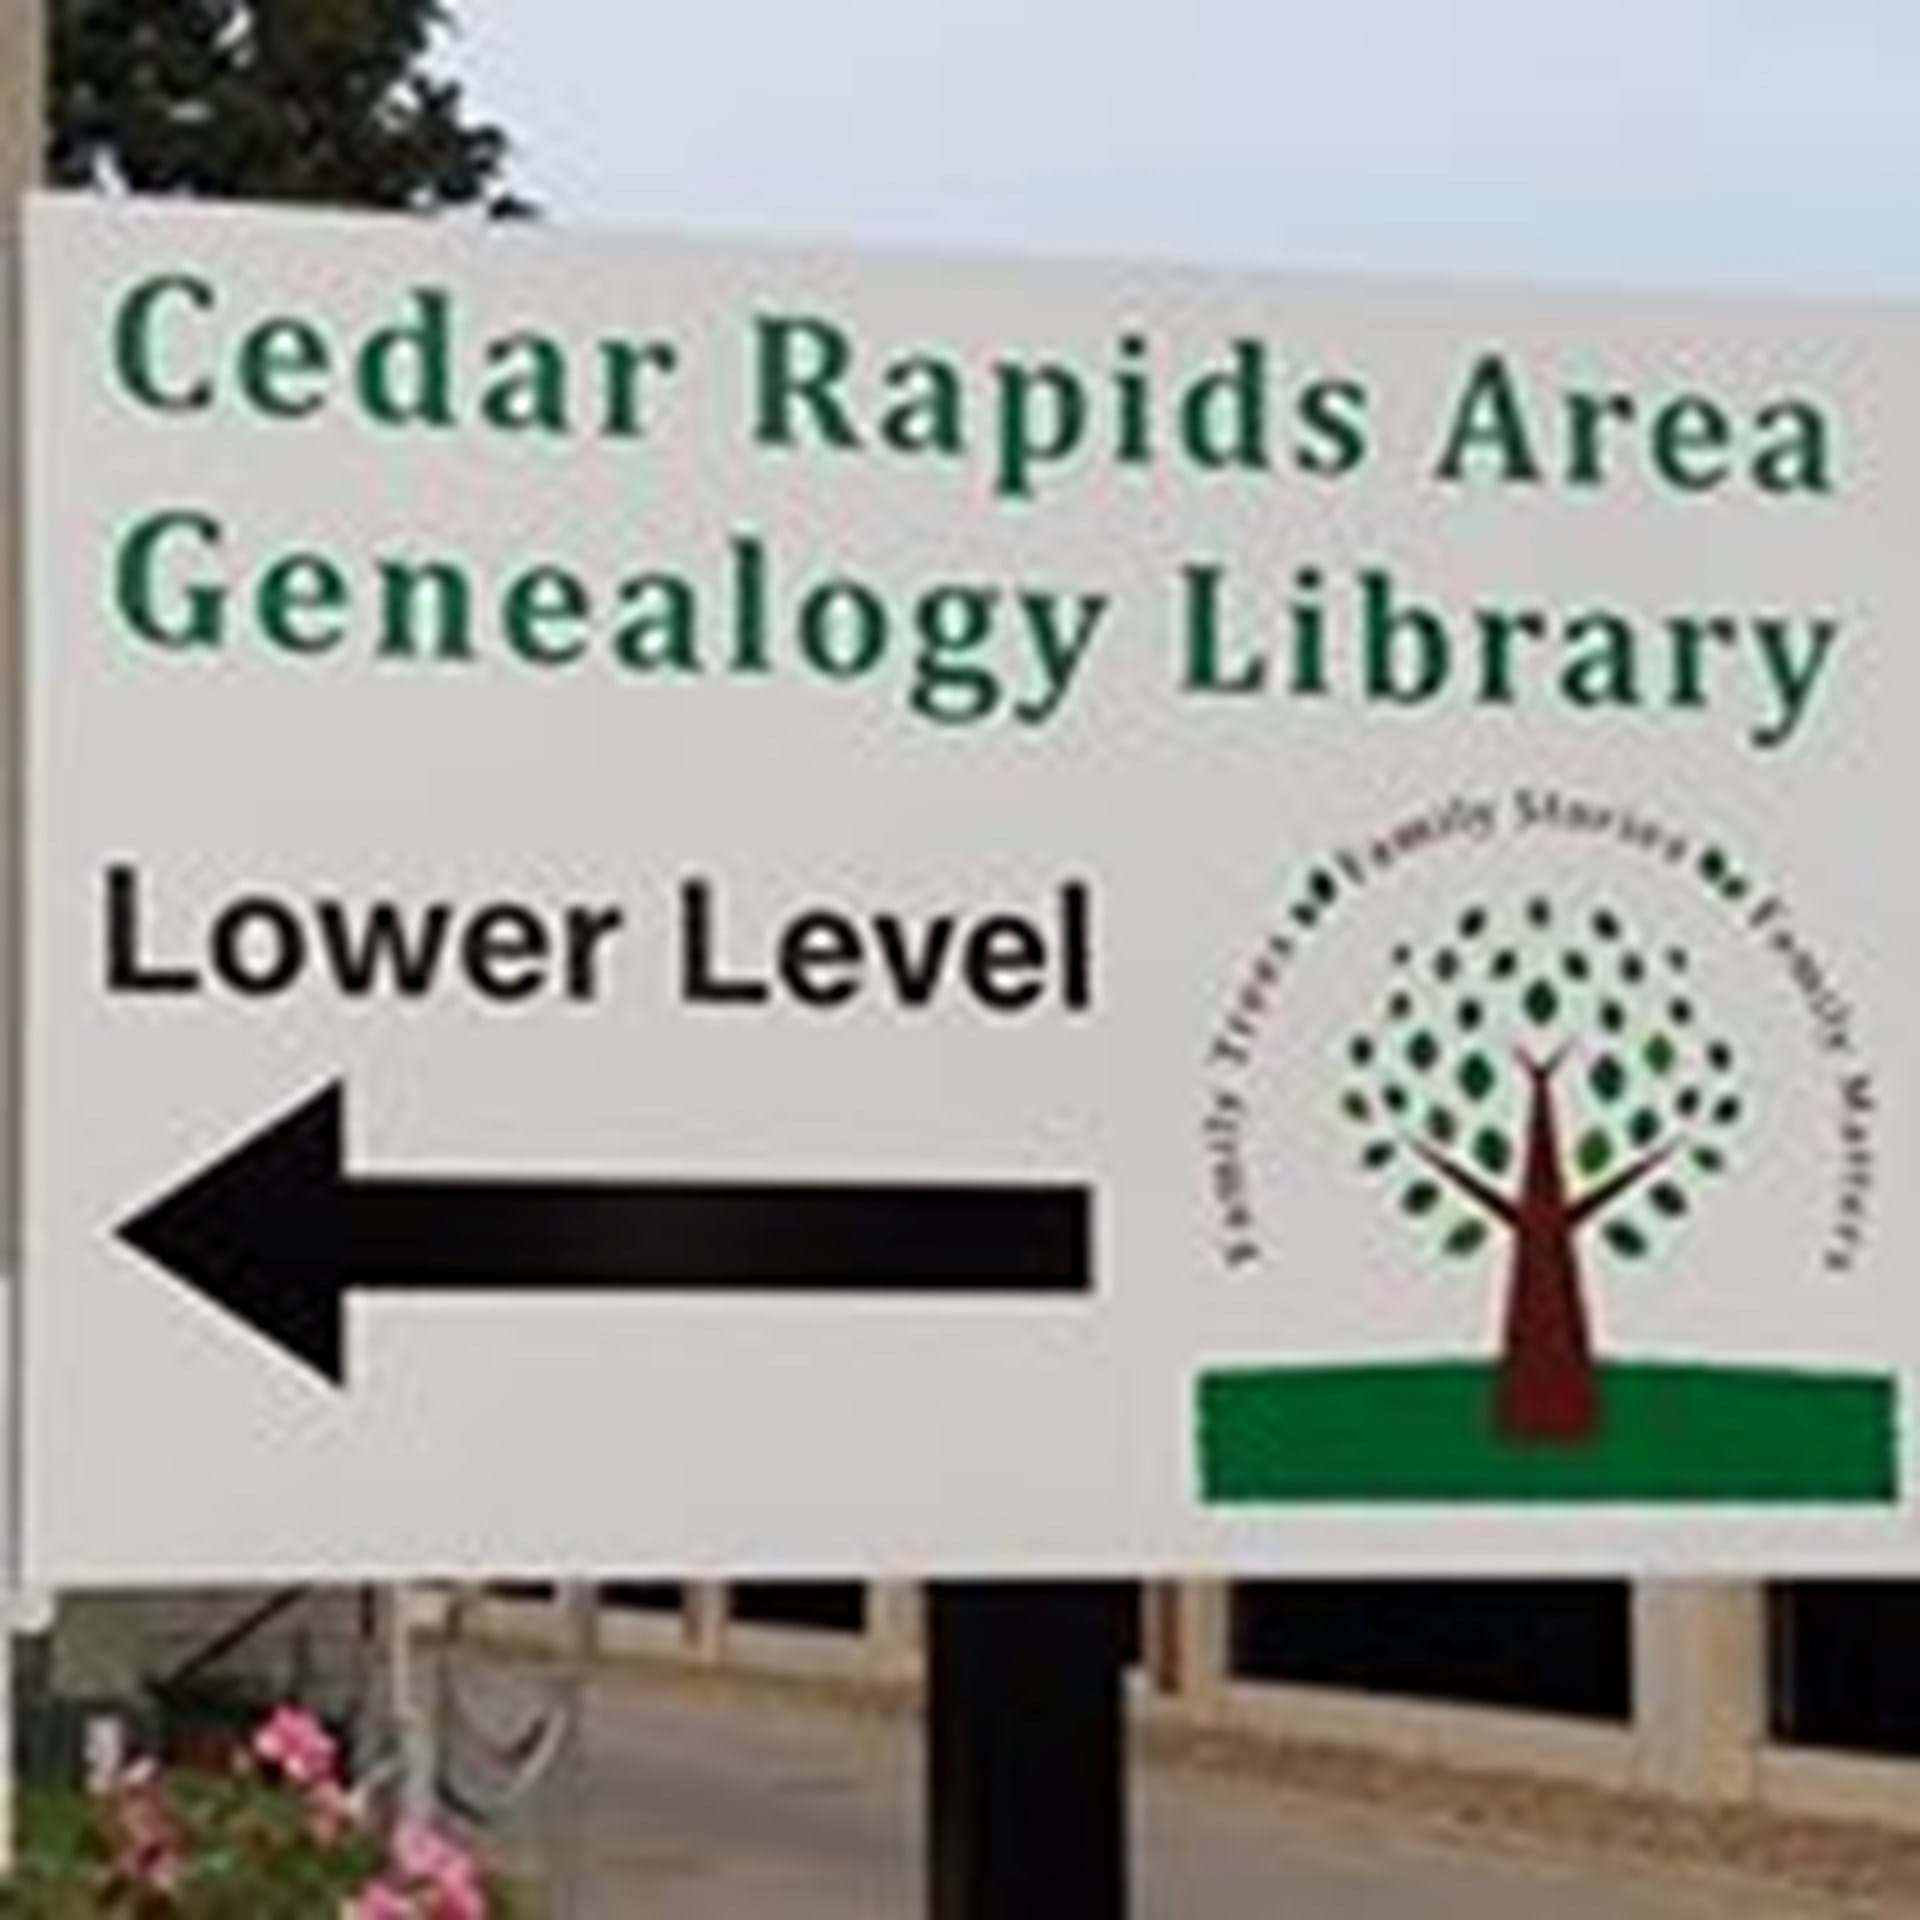 The Cedar Rapids Area Genealogy Library